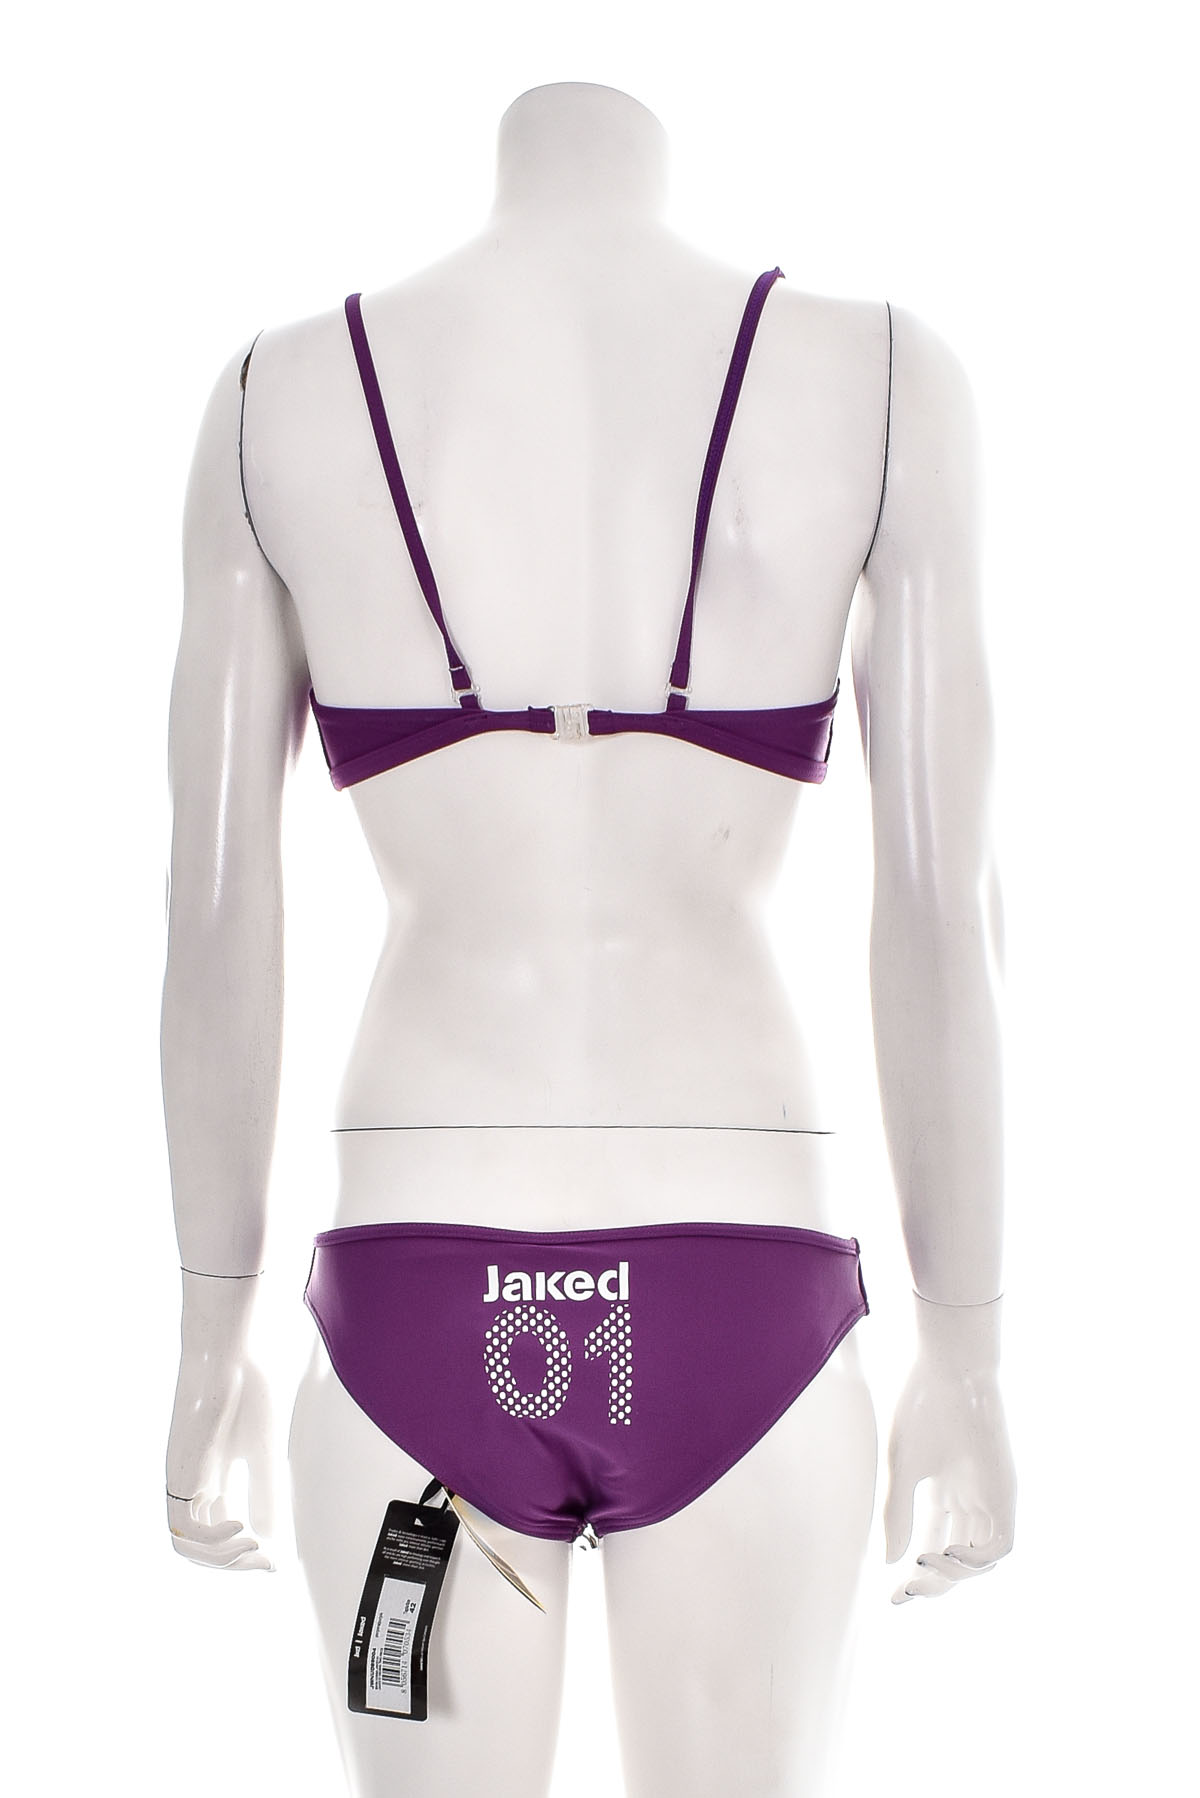 Women's swimsuit - Jaked - 1